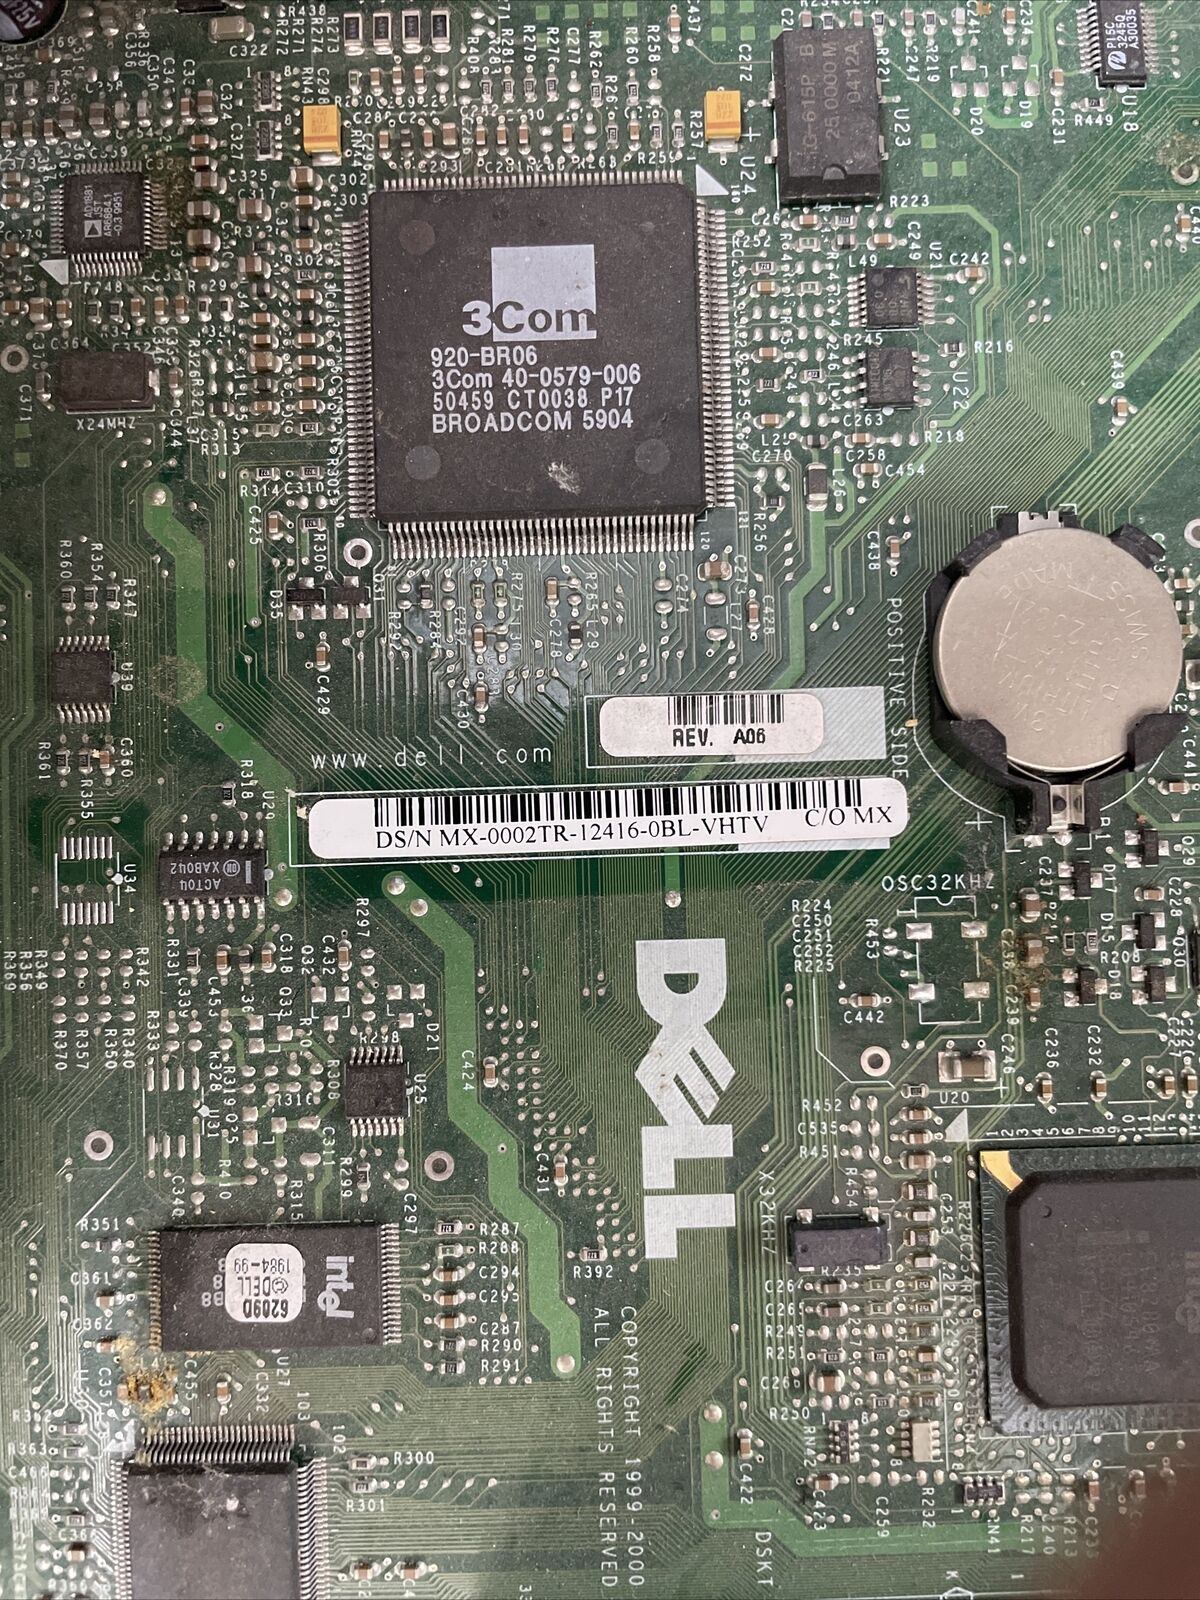 Dell Optiplex GX110 DT Intel Pentium III 866MHz 256MB RAM No HDD No OS